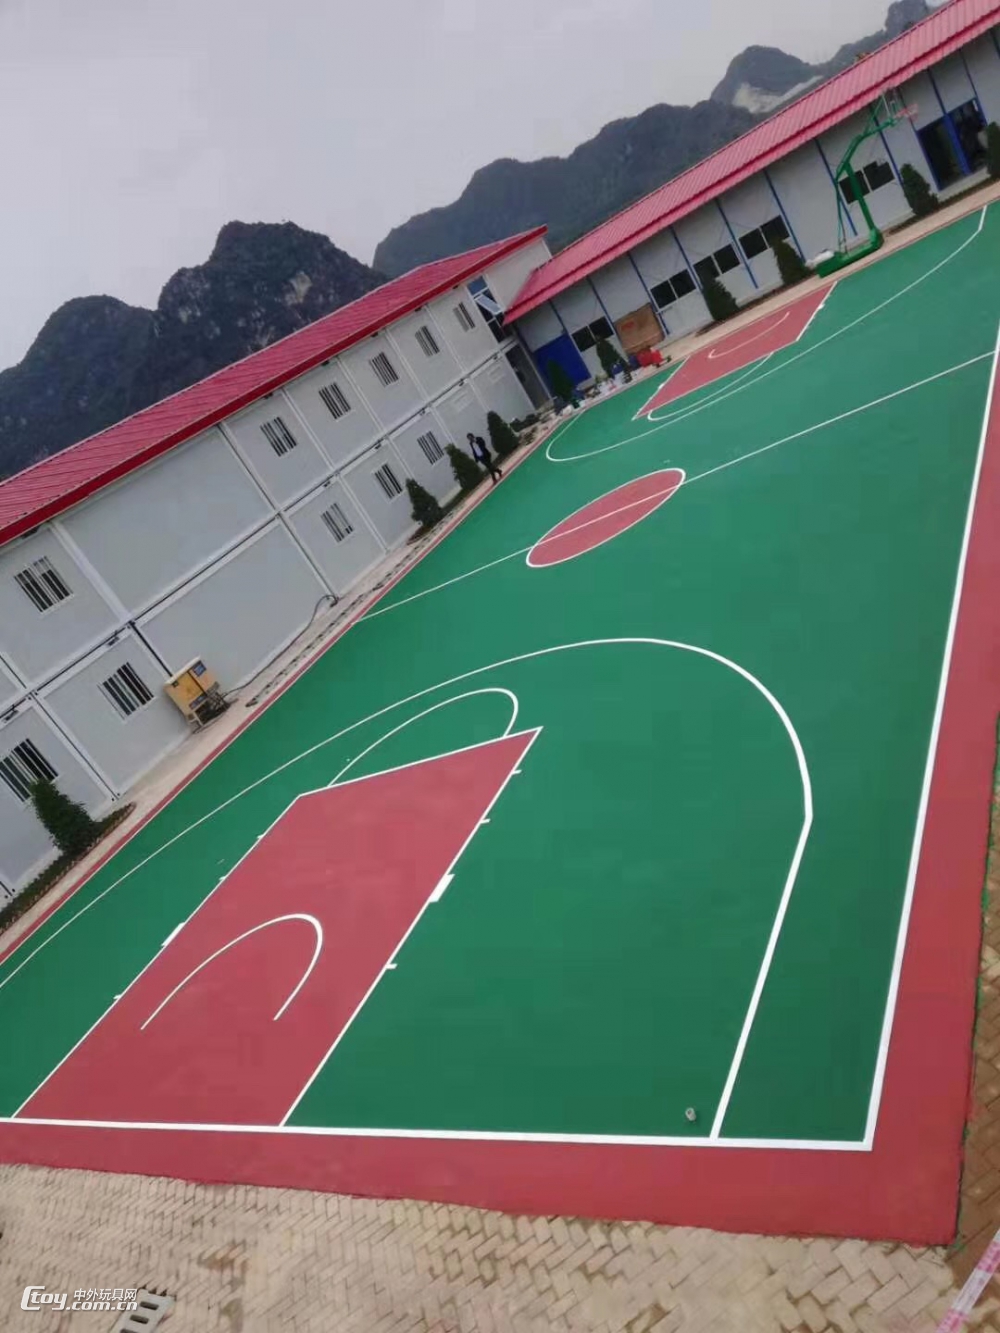 广西桂林提供公园景区EPDM橡胶地垫 室外跑道设施